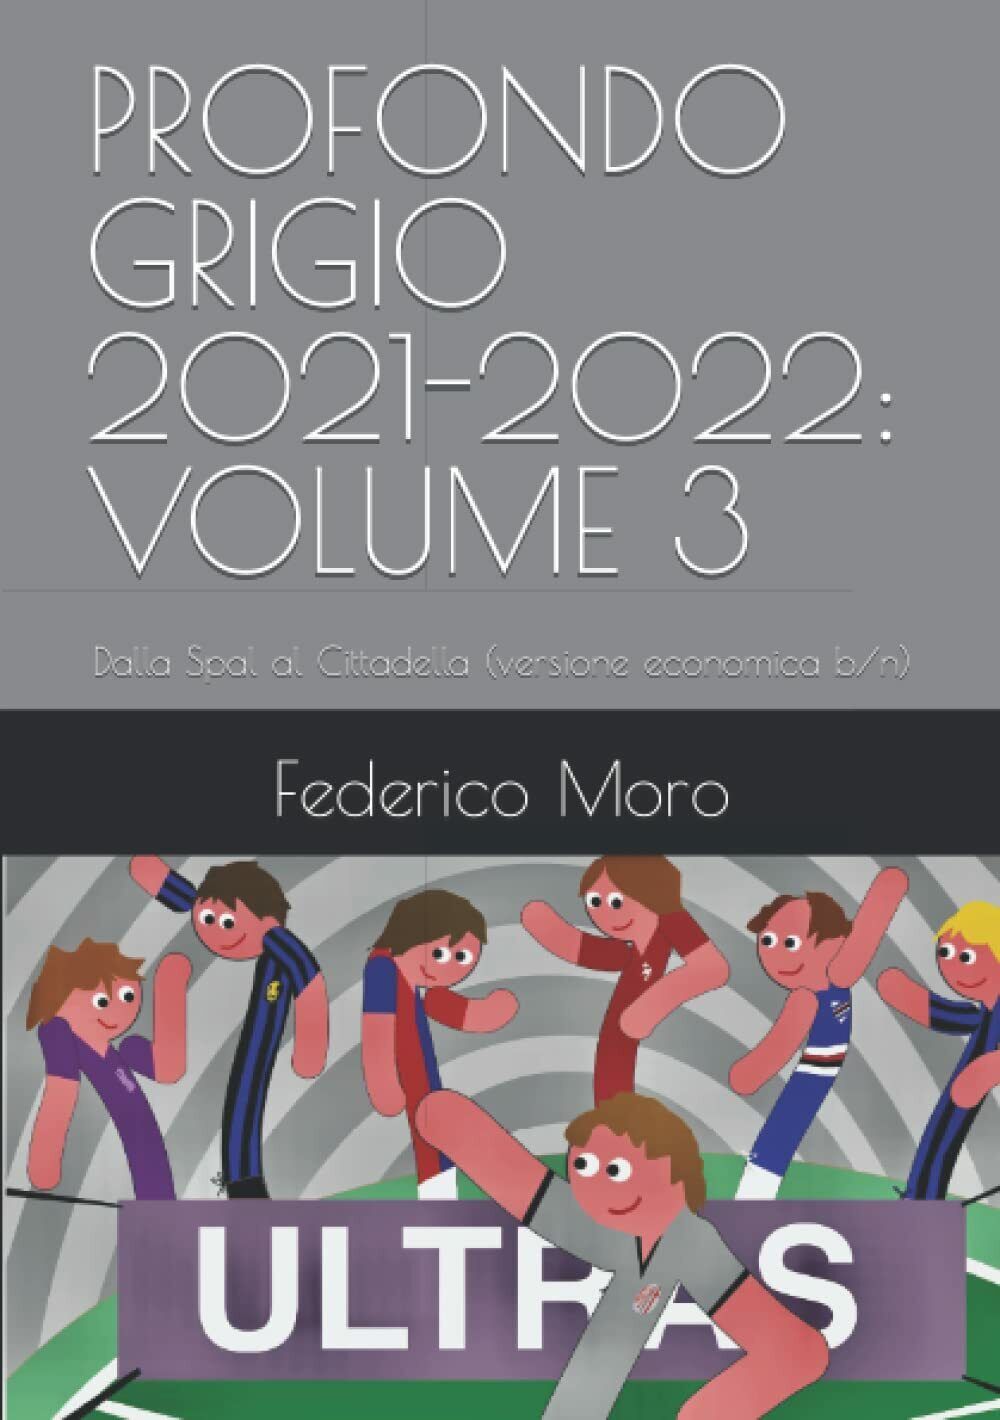 PROFONDO GRIGIO 2021-2022: VOLUME 3: Dalla Spal al Cittadella (versione economic